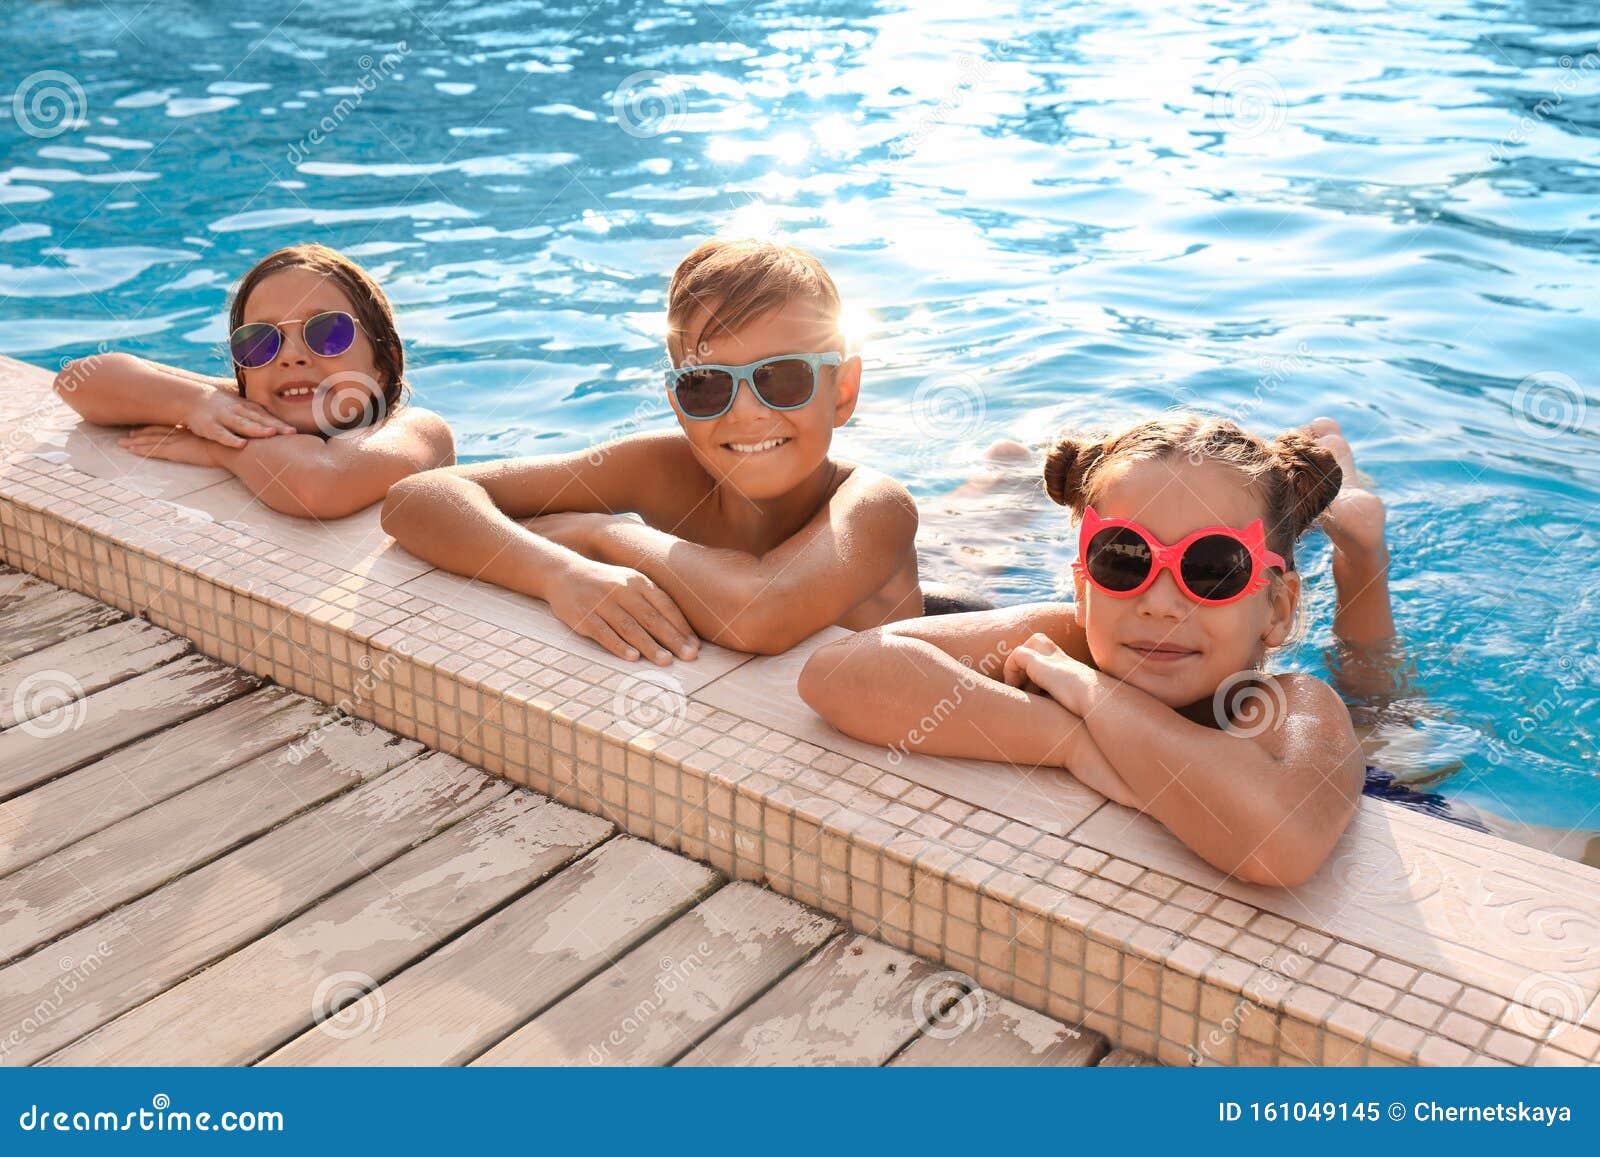 Niños Felices Con Gafas De Sol En La Piscina Imagen de archivo